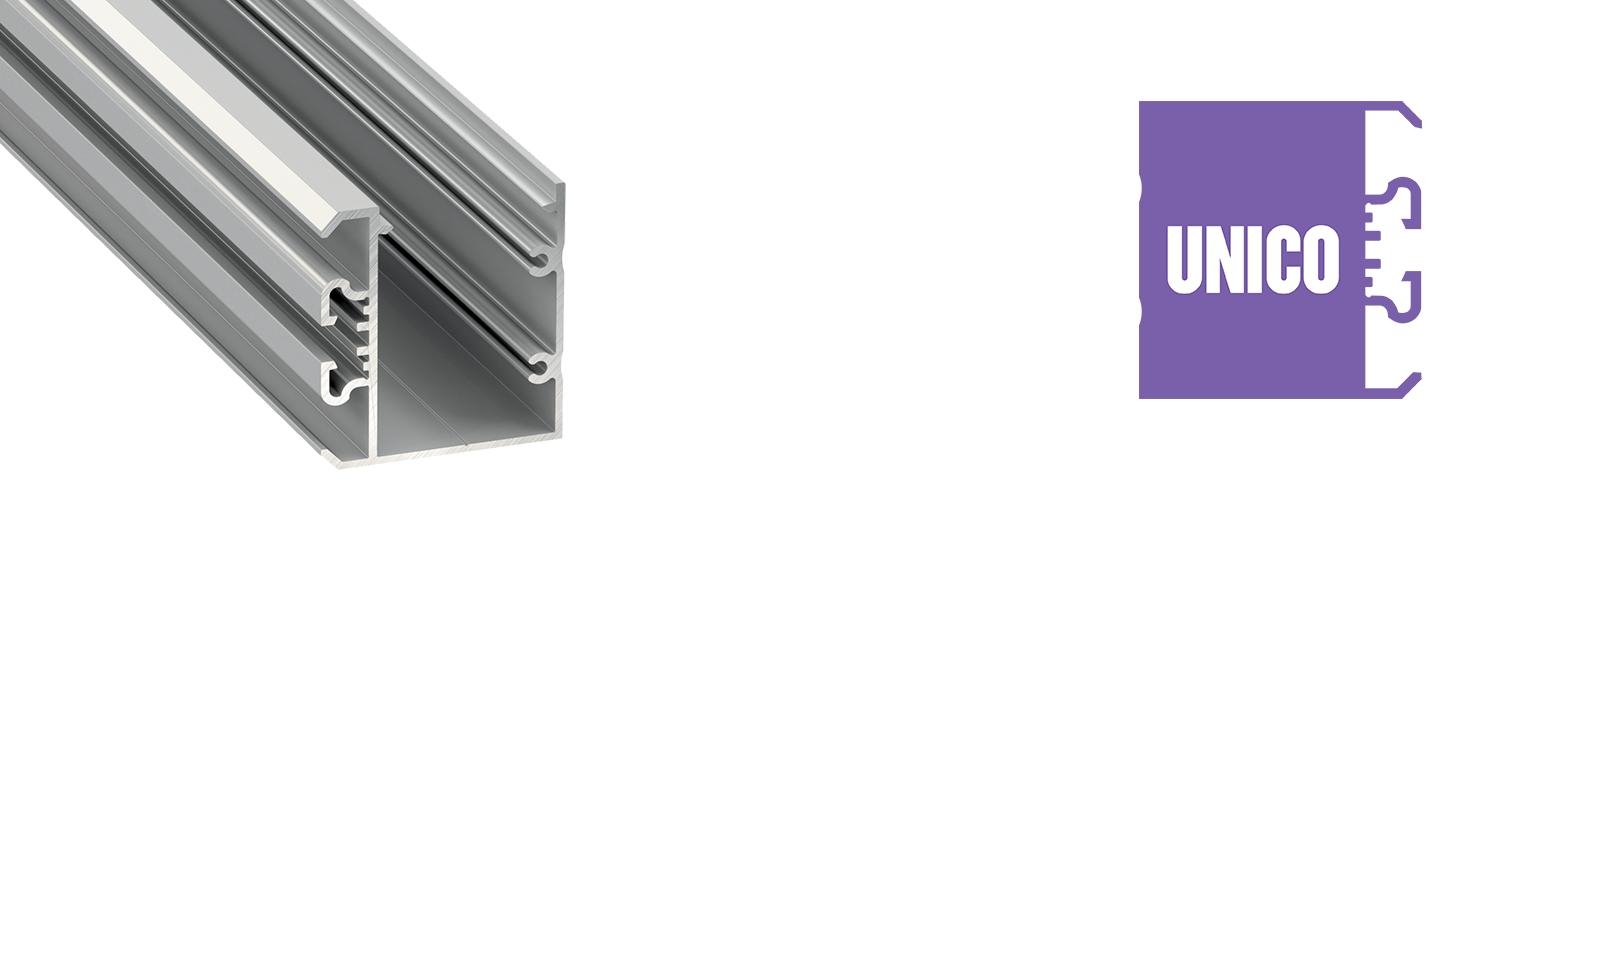 LUMINES "UNICO" one-side surface mounted profile